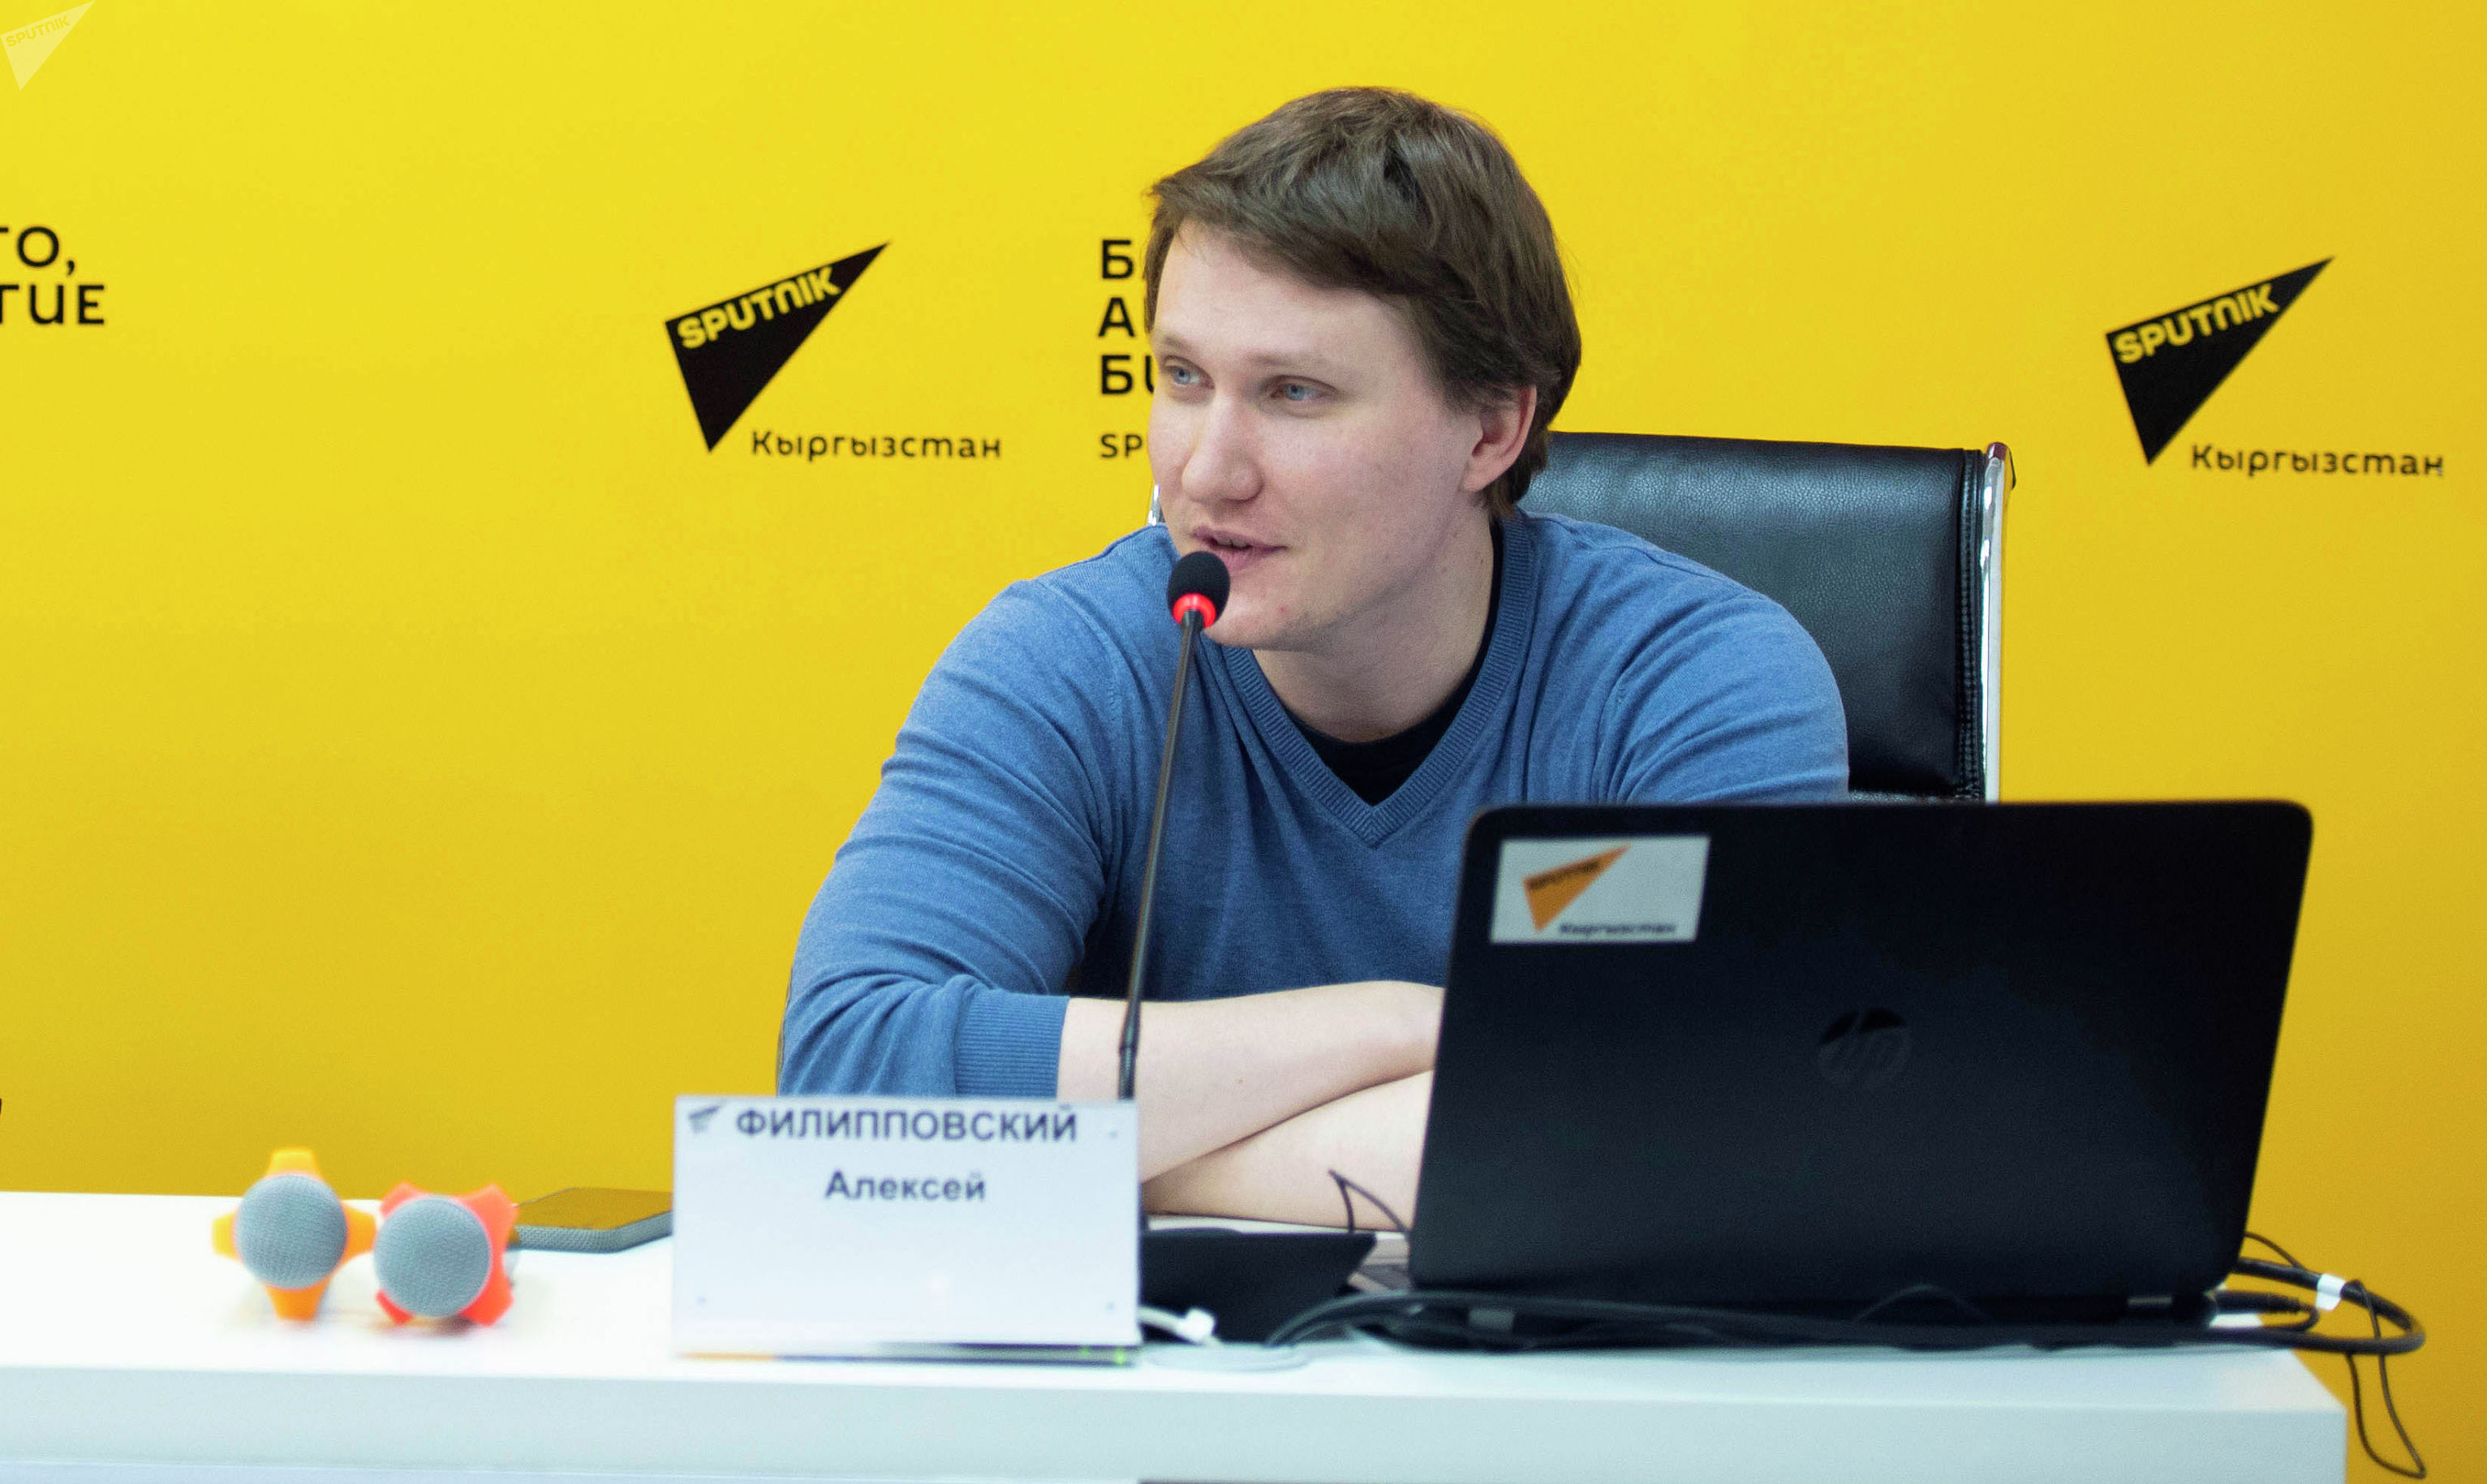 Руководитель центра интернет-технологий МИА Россия сегодня Алексей Филипповский в мультимедийном пресс-центре Sputnik Кыргызстан